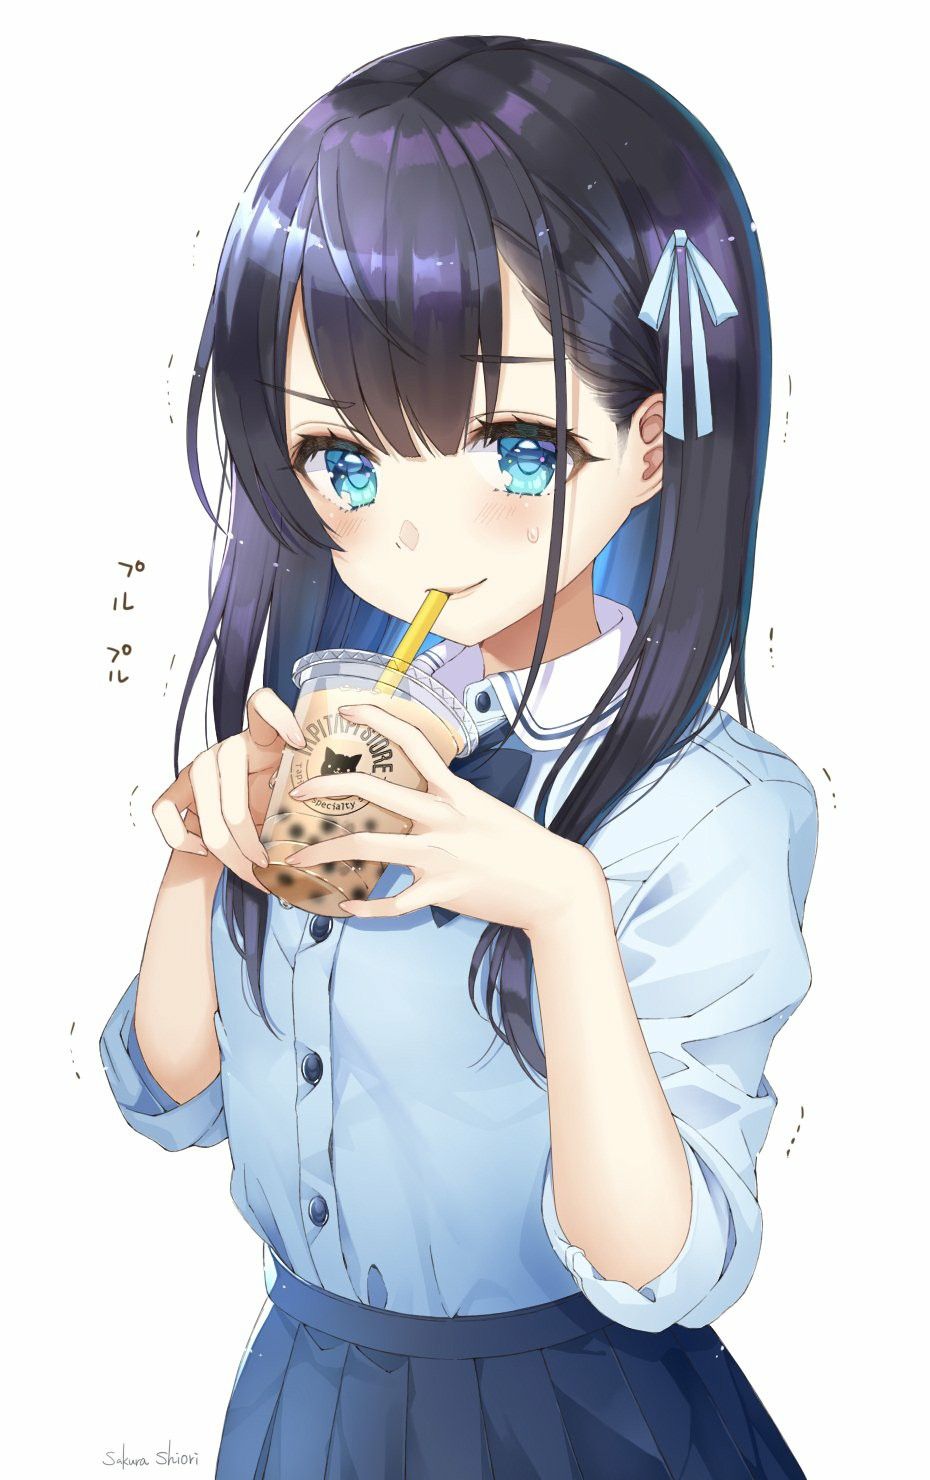 Những hình ảnh đồ ăn anime cute luôn là đề tài hấp dẫn. Trong bức ảnh này, nhân vật chibi đang thưởng thức một ly trà sữa ngon lành. Xem nào!